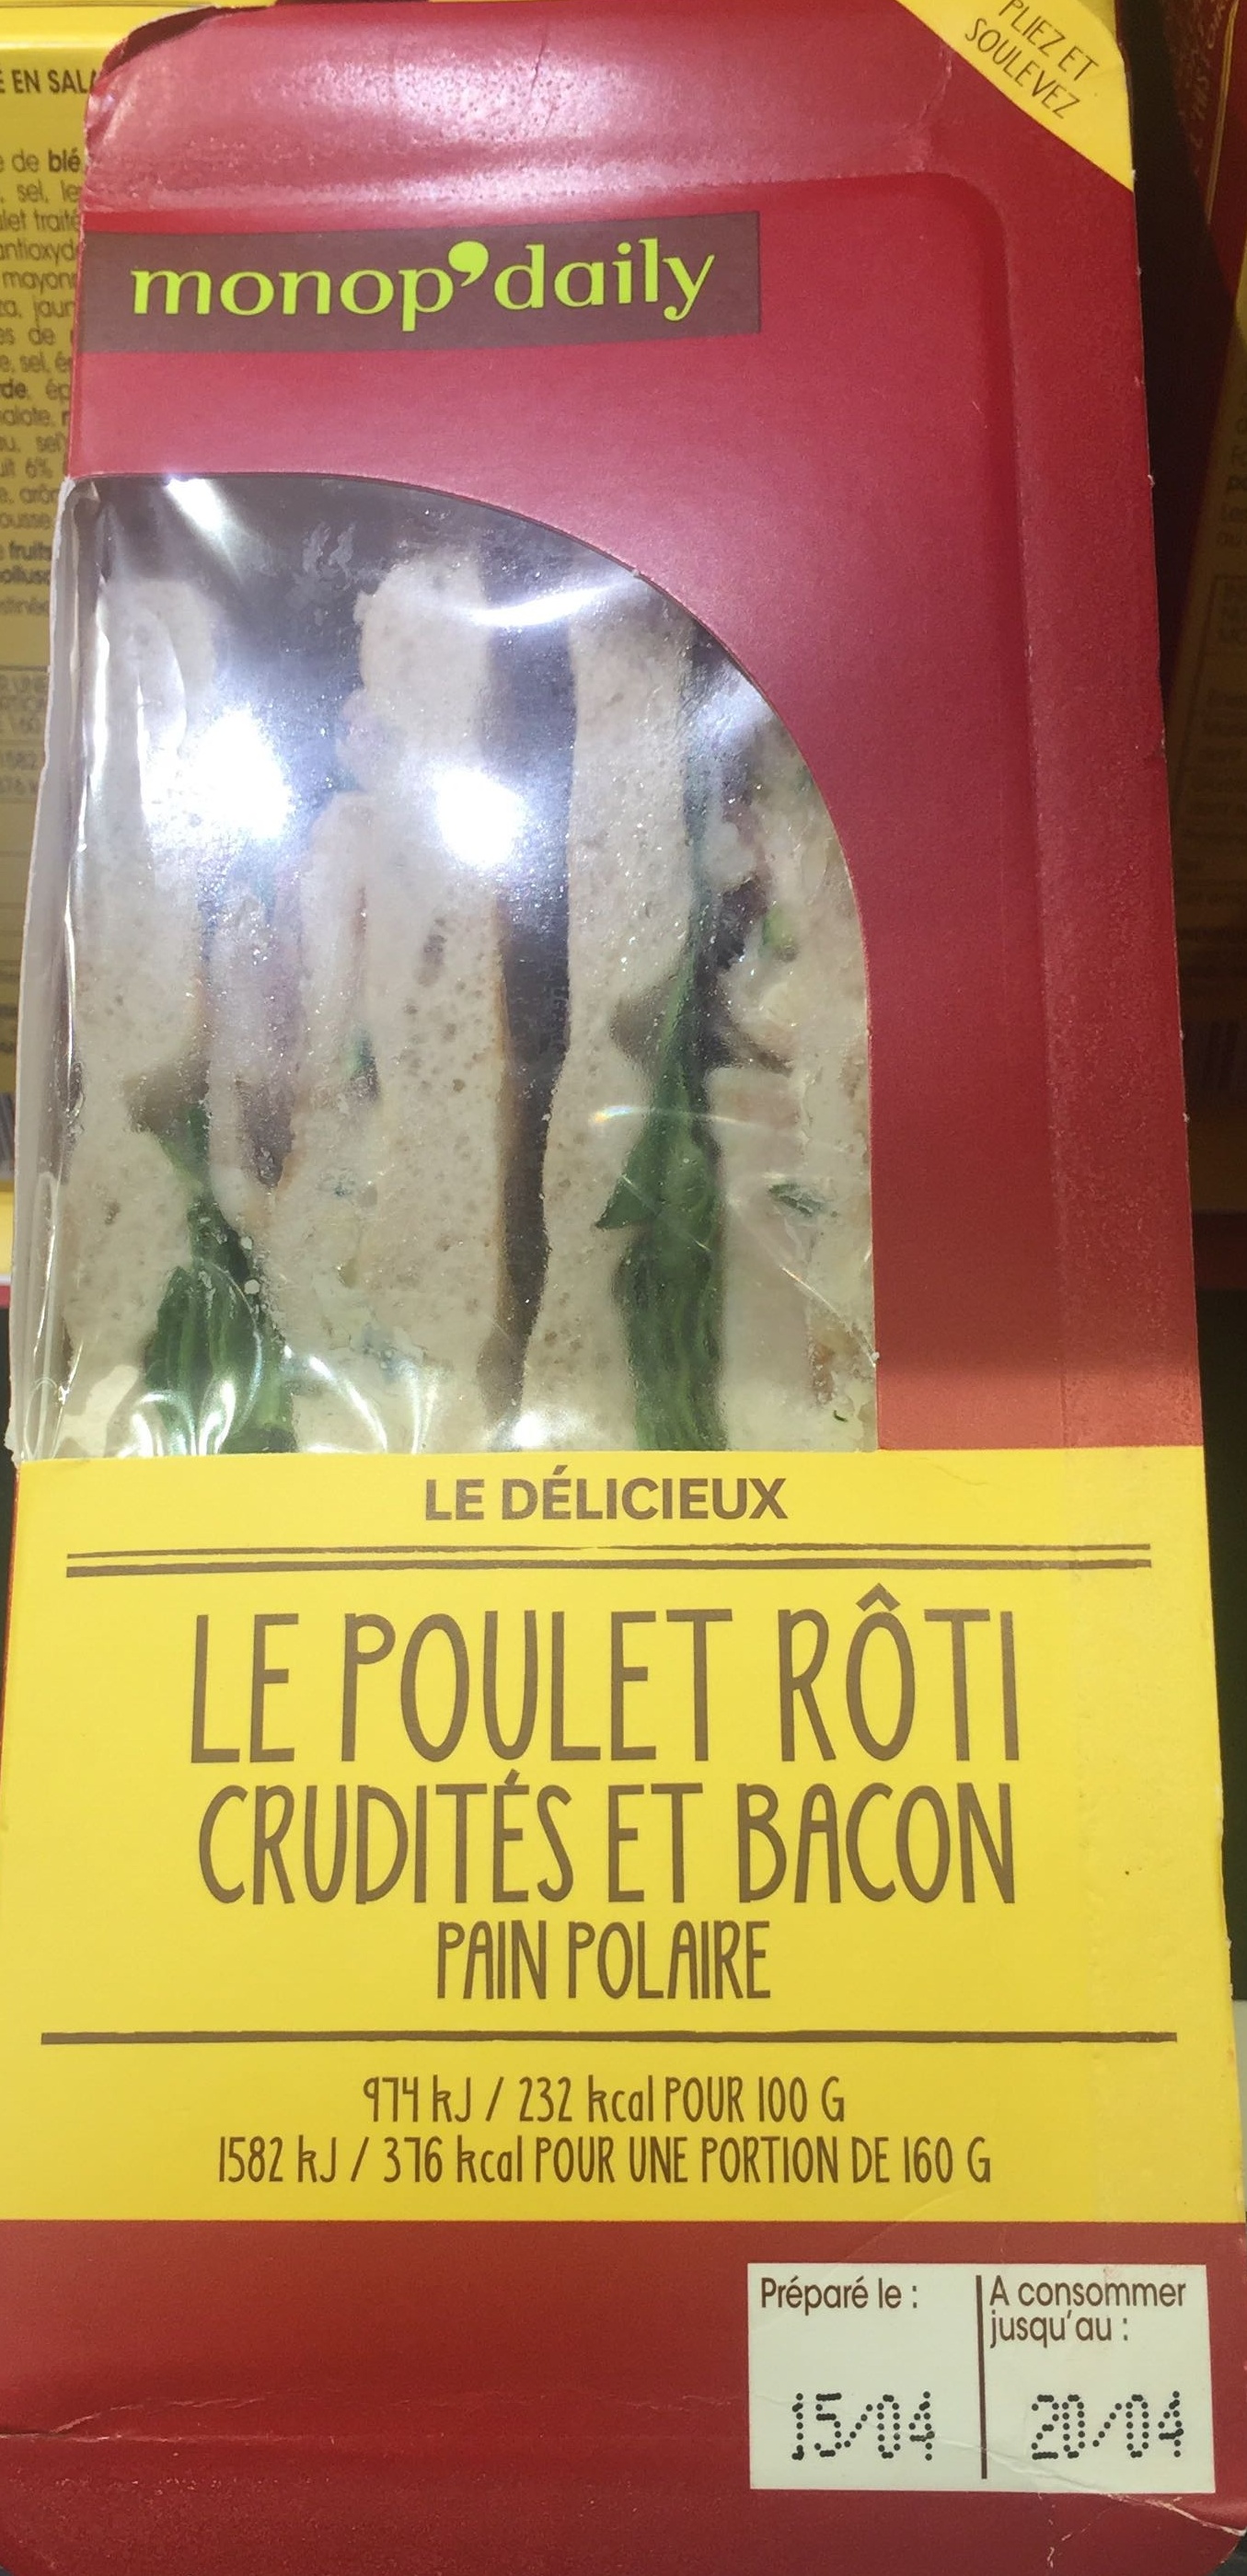 Sandwich poulet roti crudité et bacon - pain polaire - Product - fr